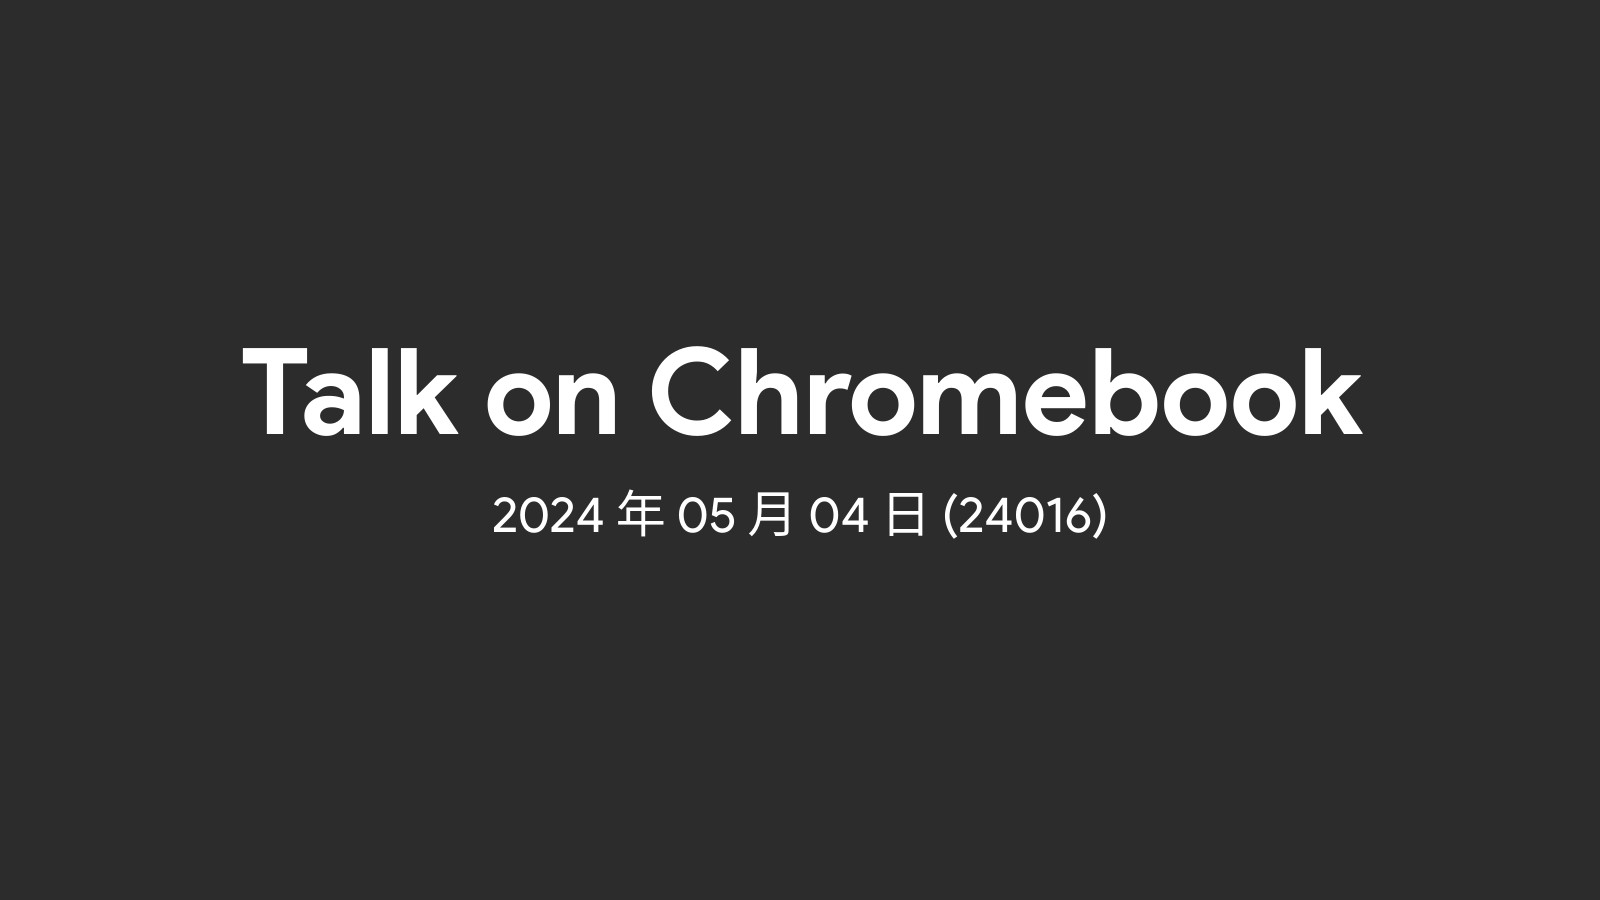 2024年05月04日 – 週間 Chromebook ニュース (24016)